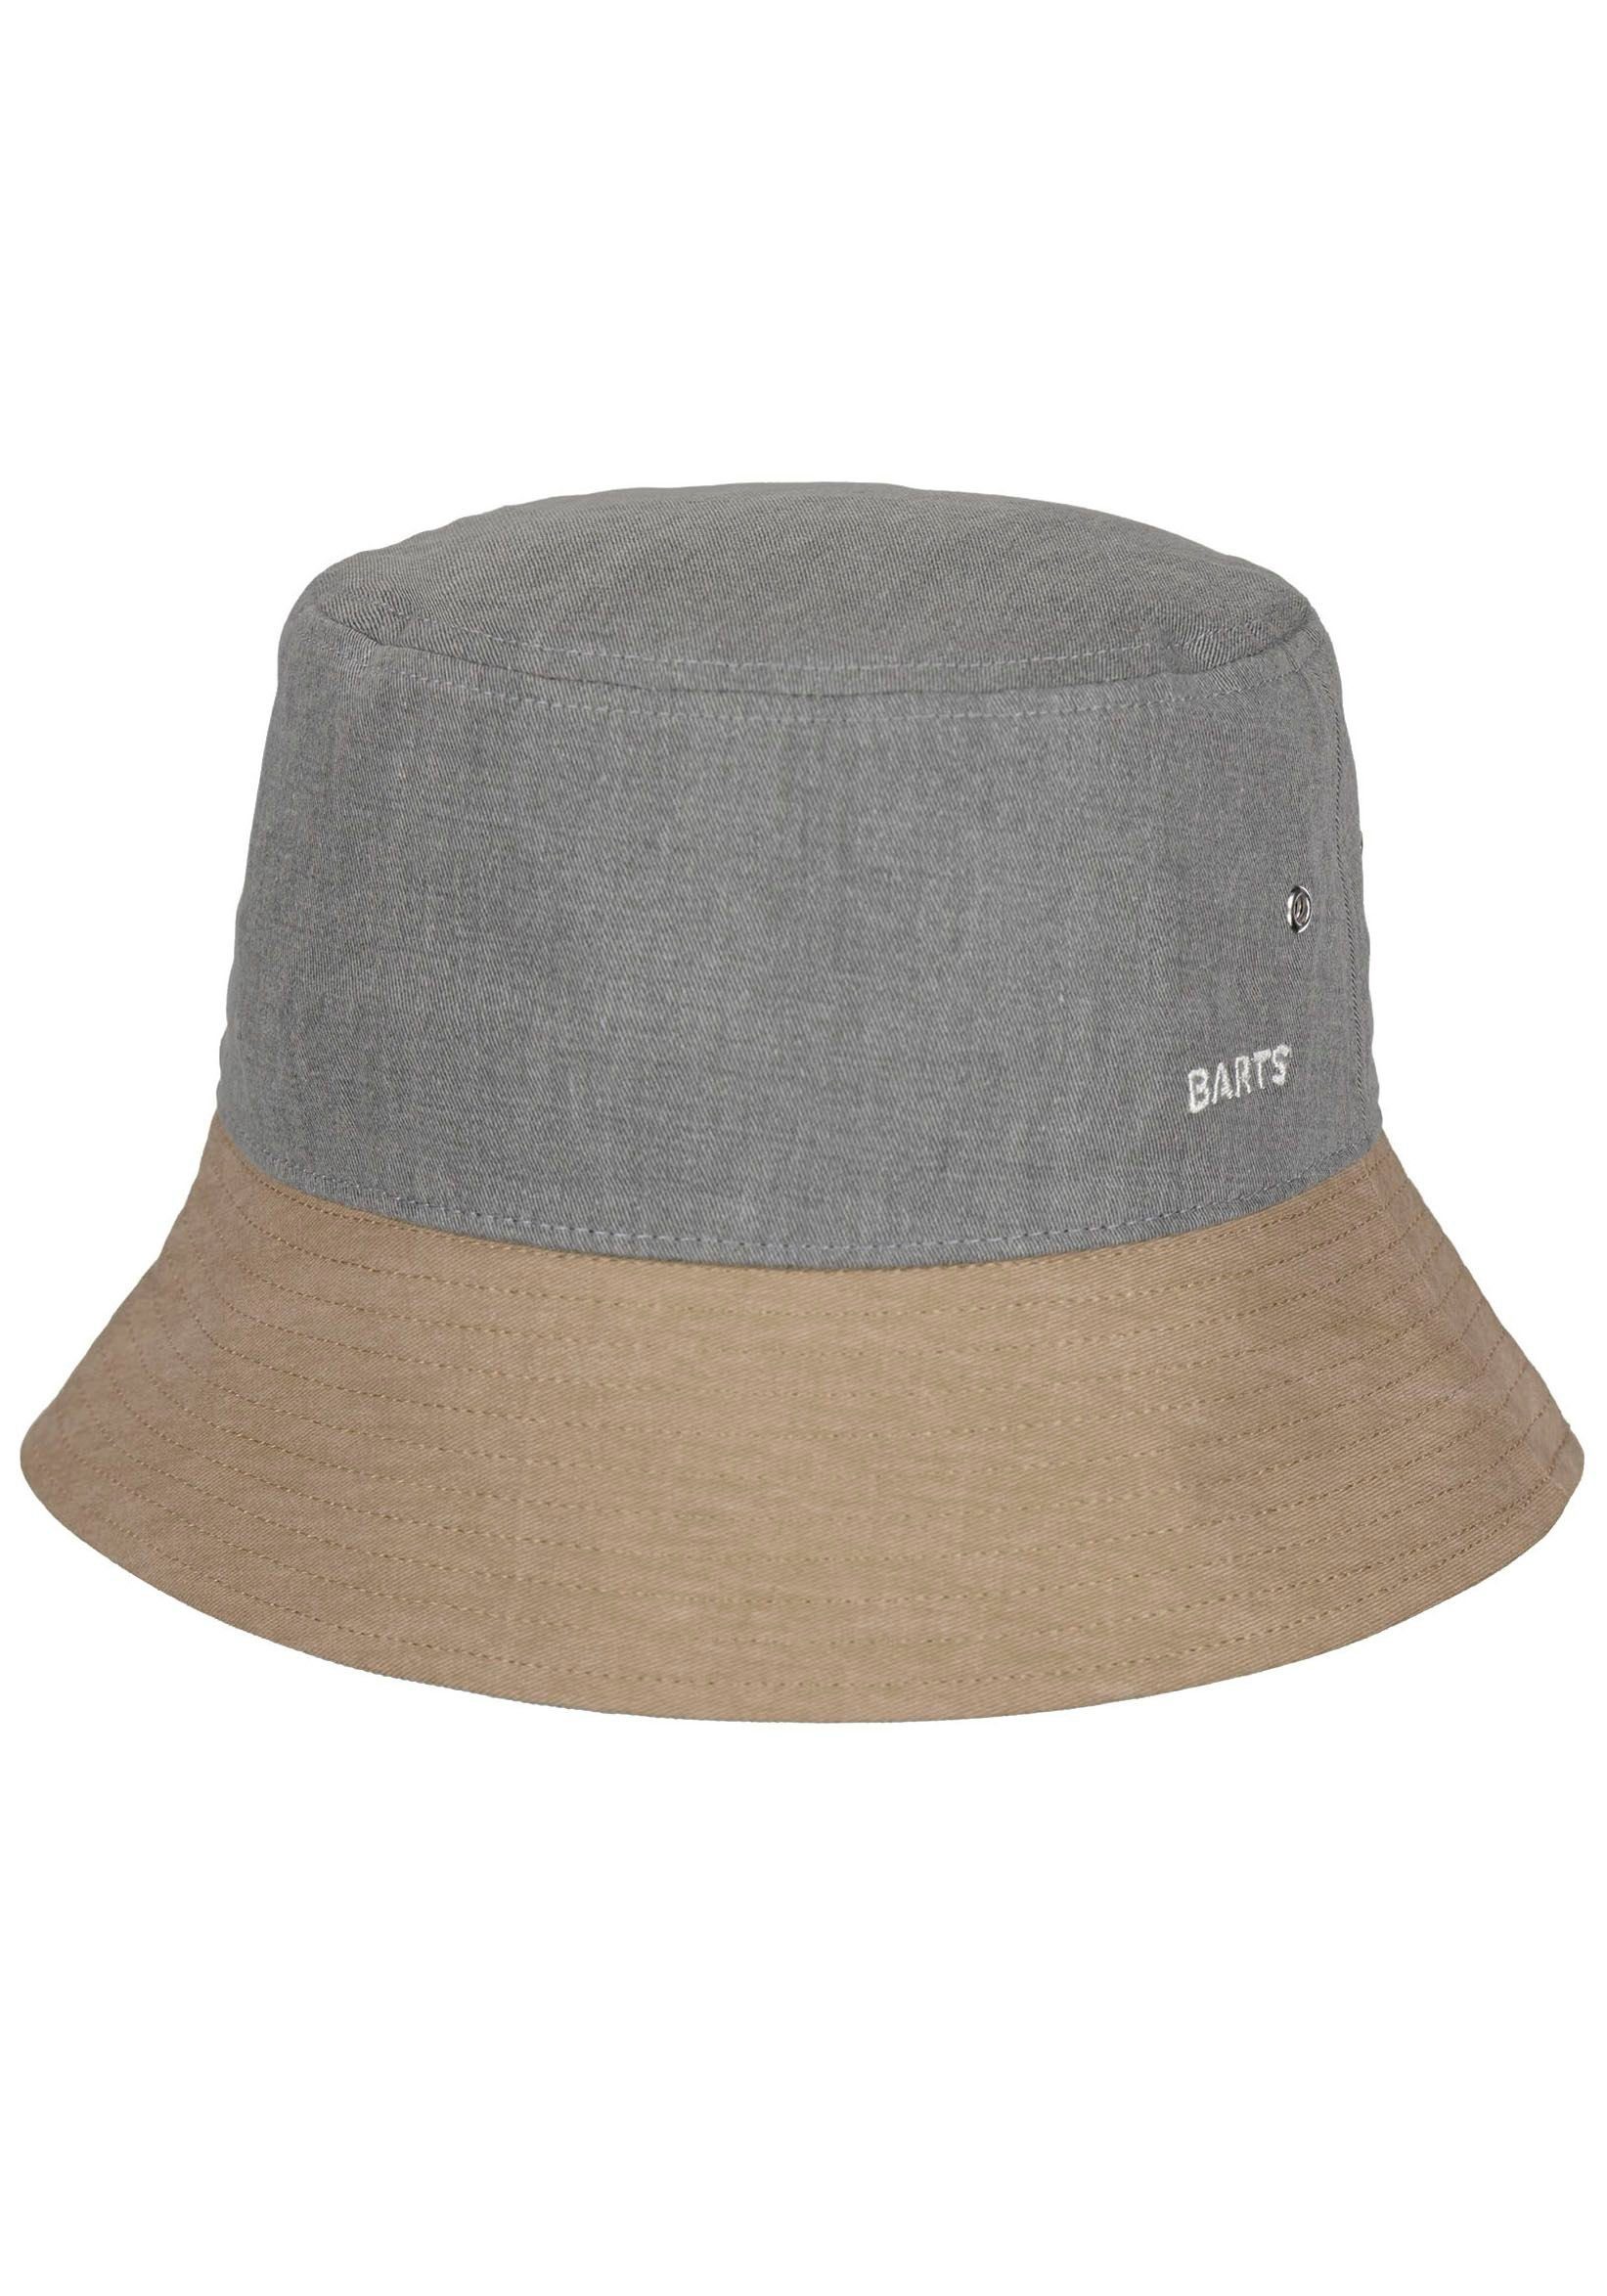 Barts Fischerhut Yarrow Hat mit Luftösen grau-beige | Sonnenhüte